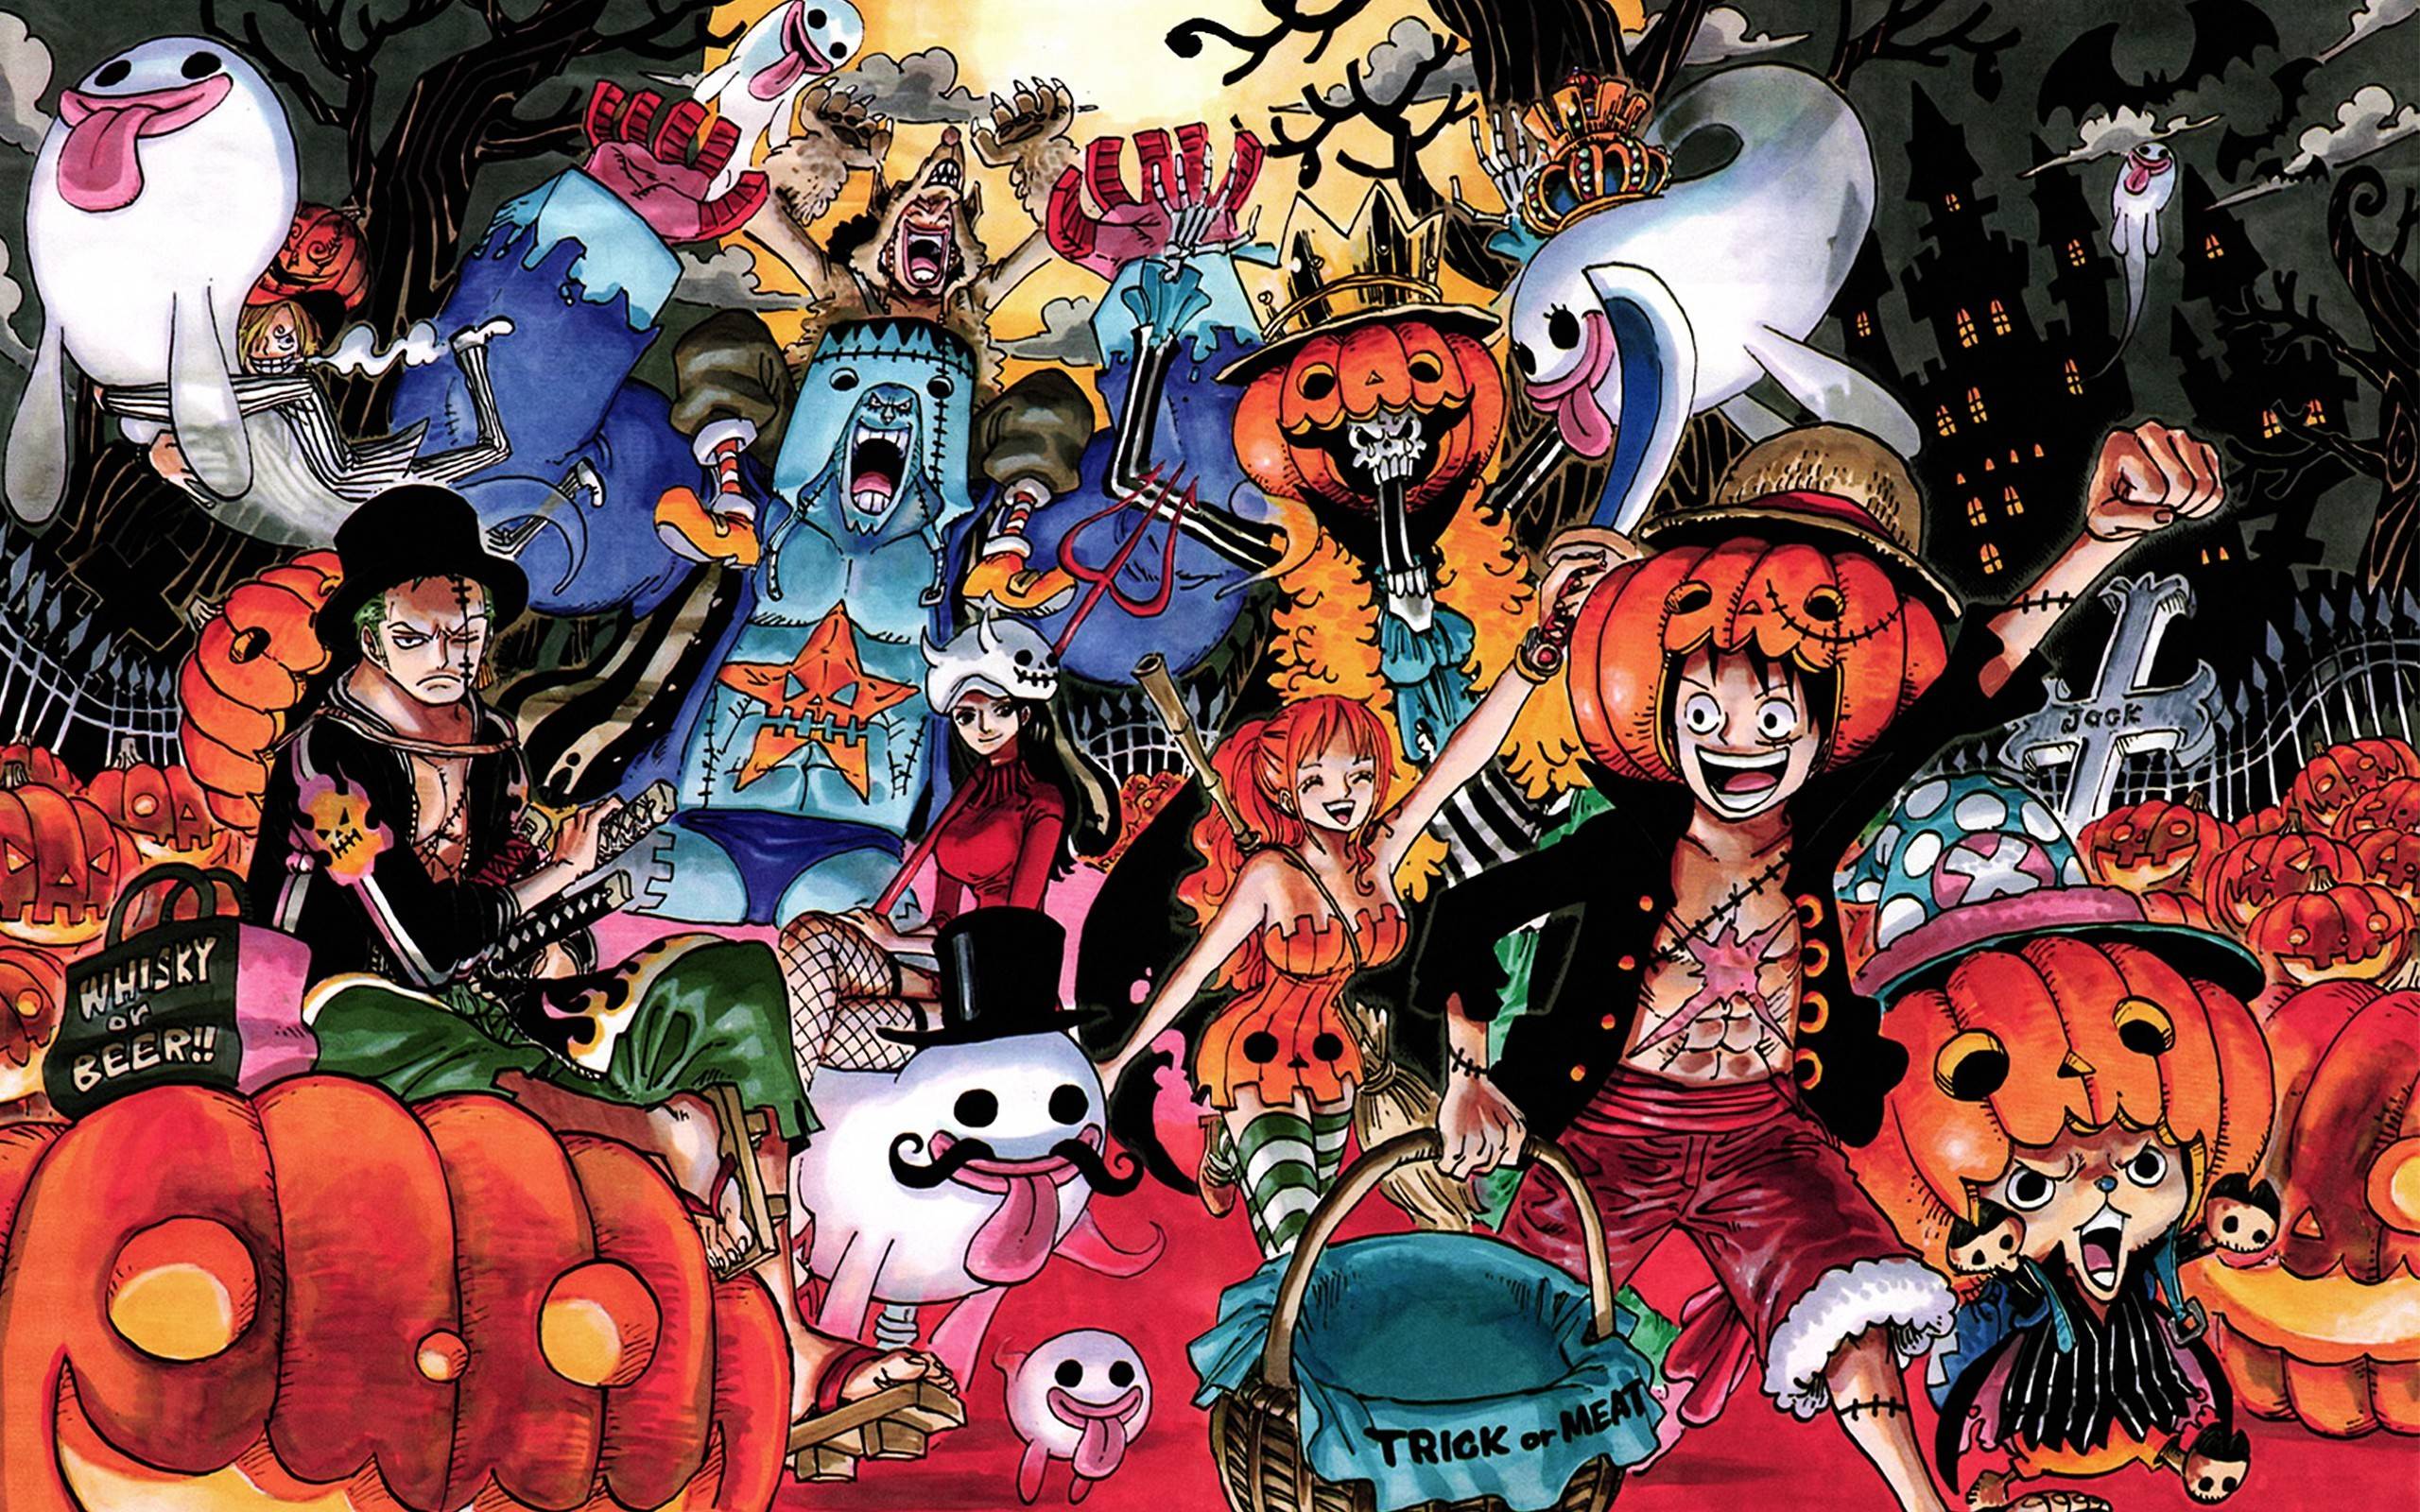 One Piece Wallpapers: Đến với bộ sưu tập hình nền One Piece, bạn sẽ khám phá ra khung cảnh huyền thoại của Tân Thế Giới cùng những nhân vật tuyệt vời. Với đa dạng về phong cách và chất lượng ảnh, bộ sưu tập hình nền One Piece sẽ khiến bạn cảm thấy thích thú và tràn đầy niềm vui khi xem.